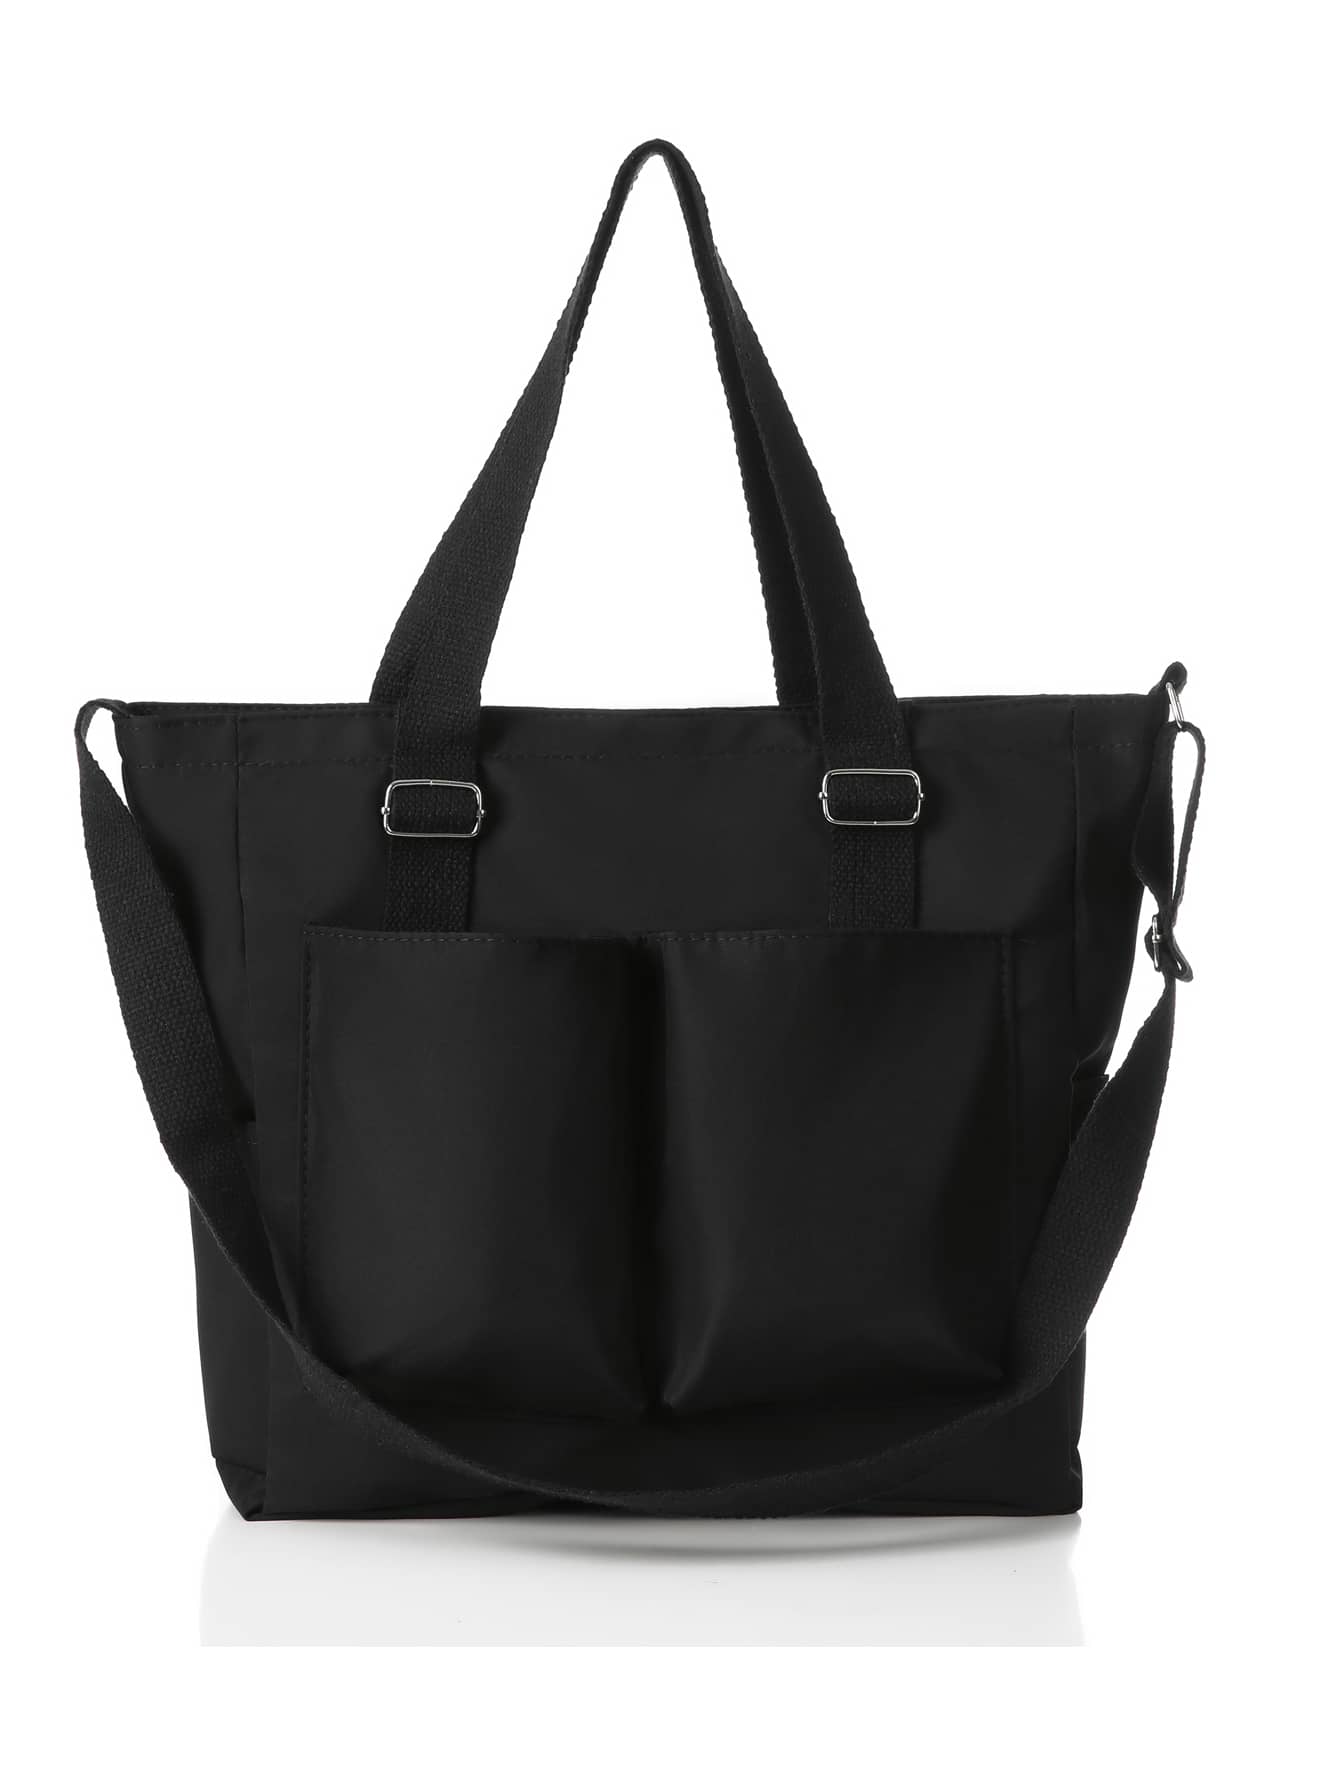 Стильная большая сумка Kpop Preppy - сумка через плечо большой вместимости для школы и путешествий., черный